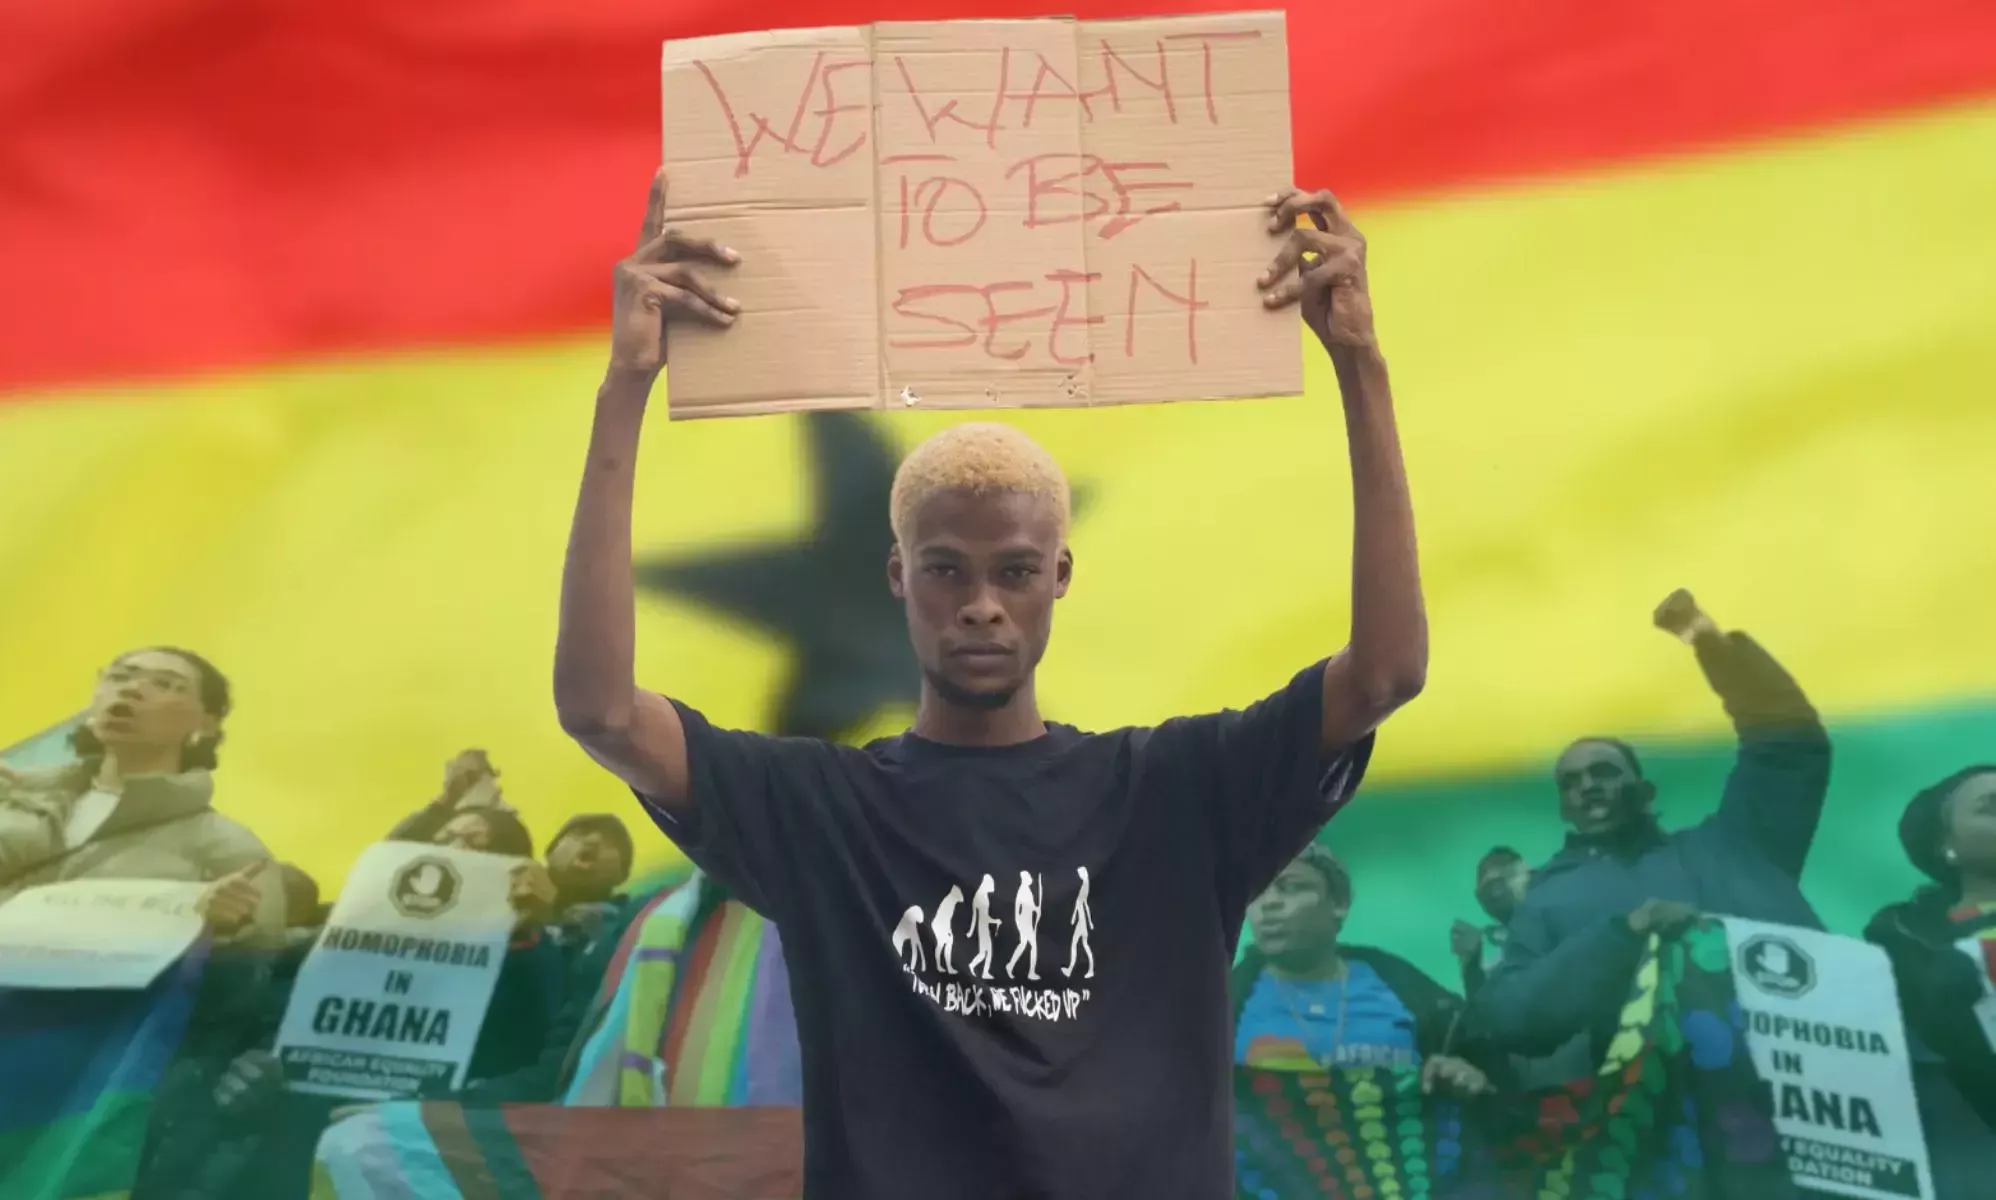 El proyecto de ley anti-LGBTQ+ de Ghana podría desencadenar una 